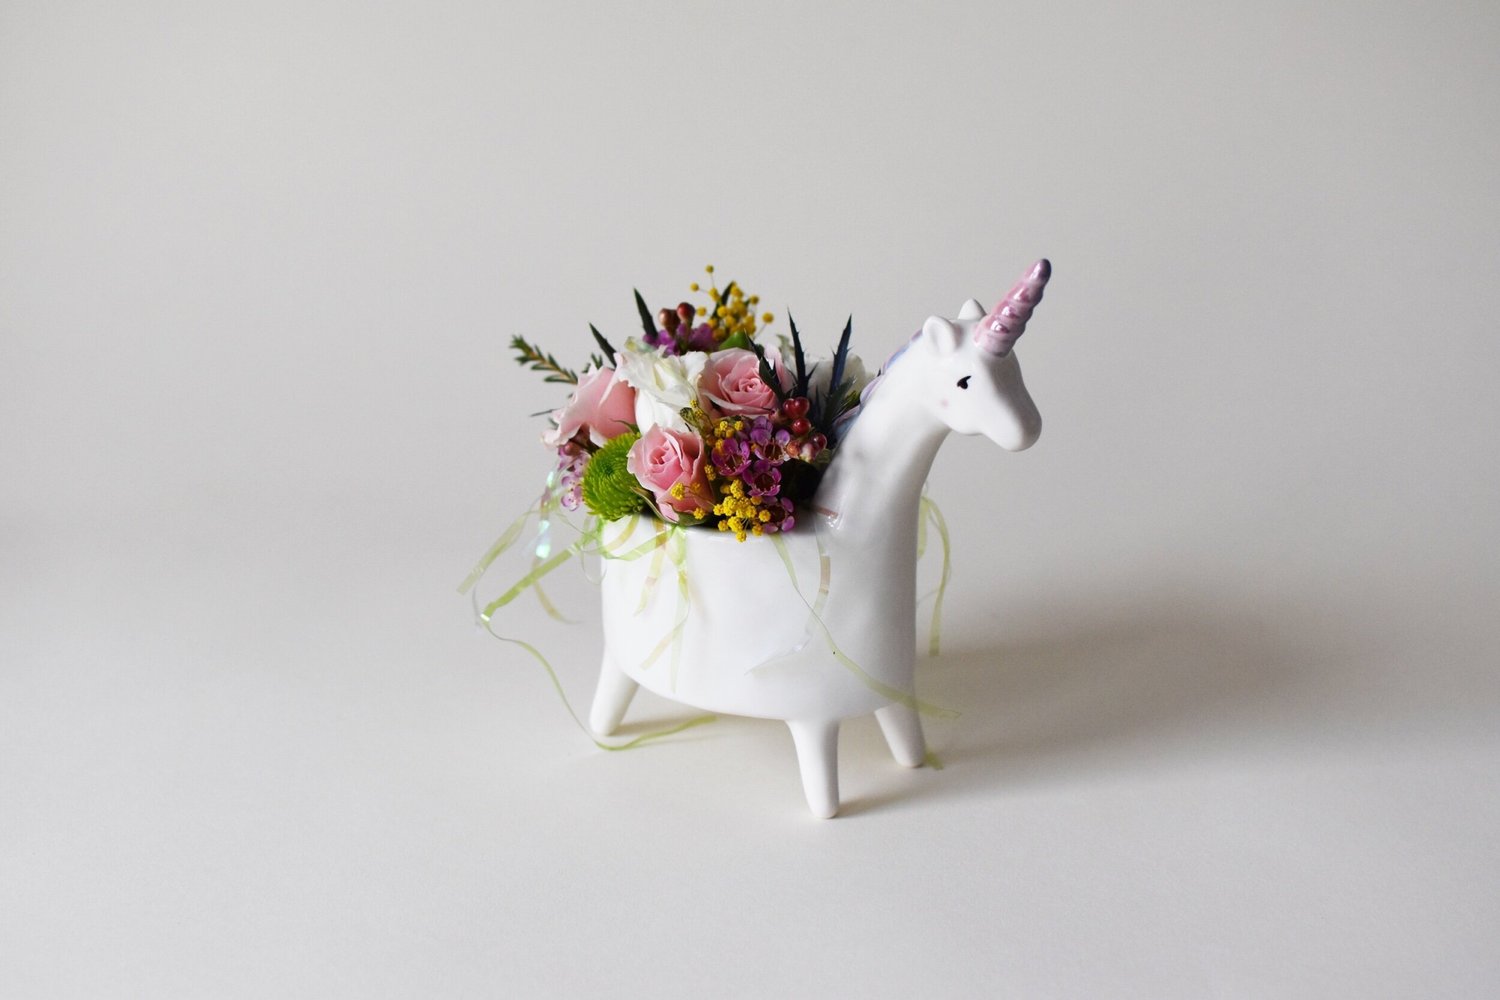 Designer's Choice Winter Floral Arrangement — Flowers by Gabrielle